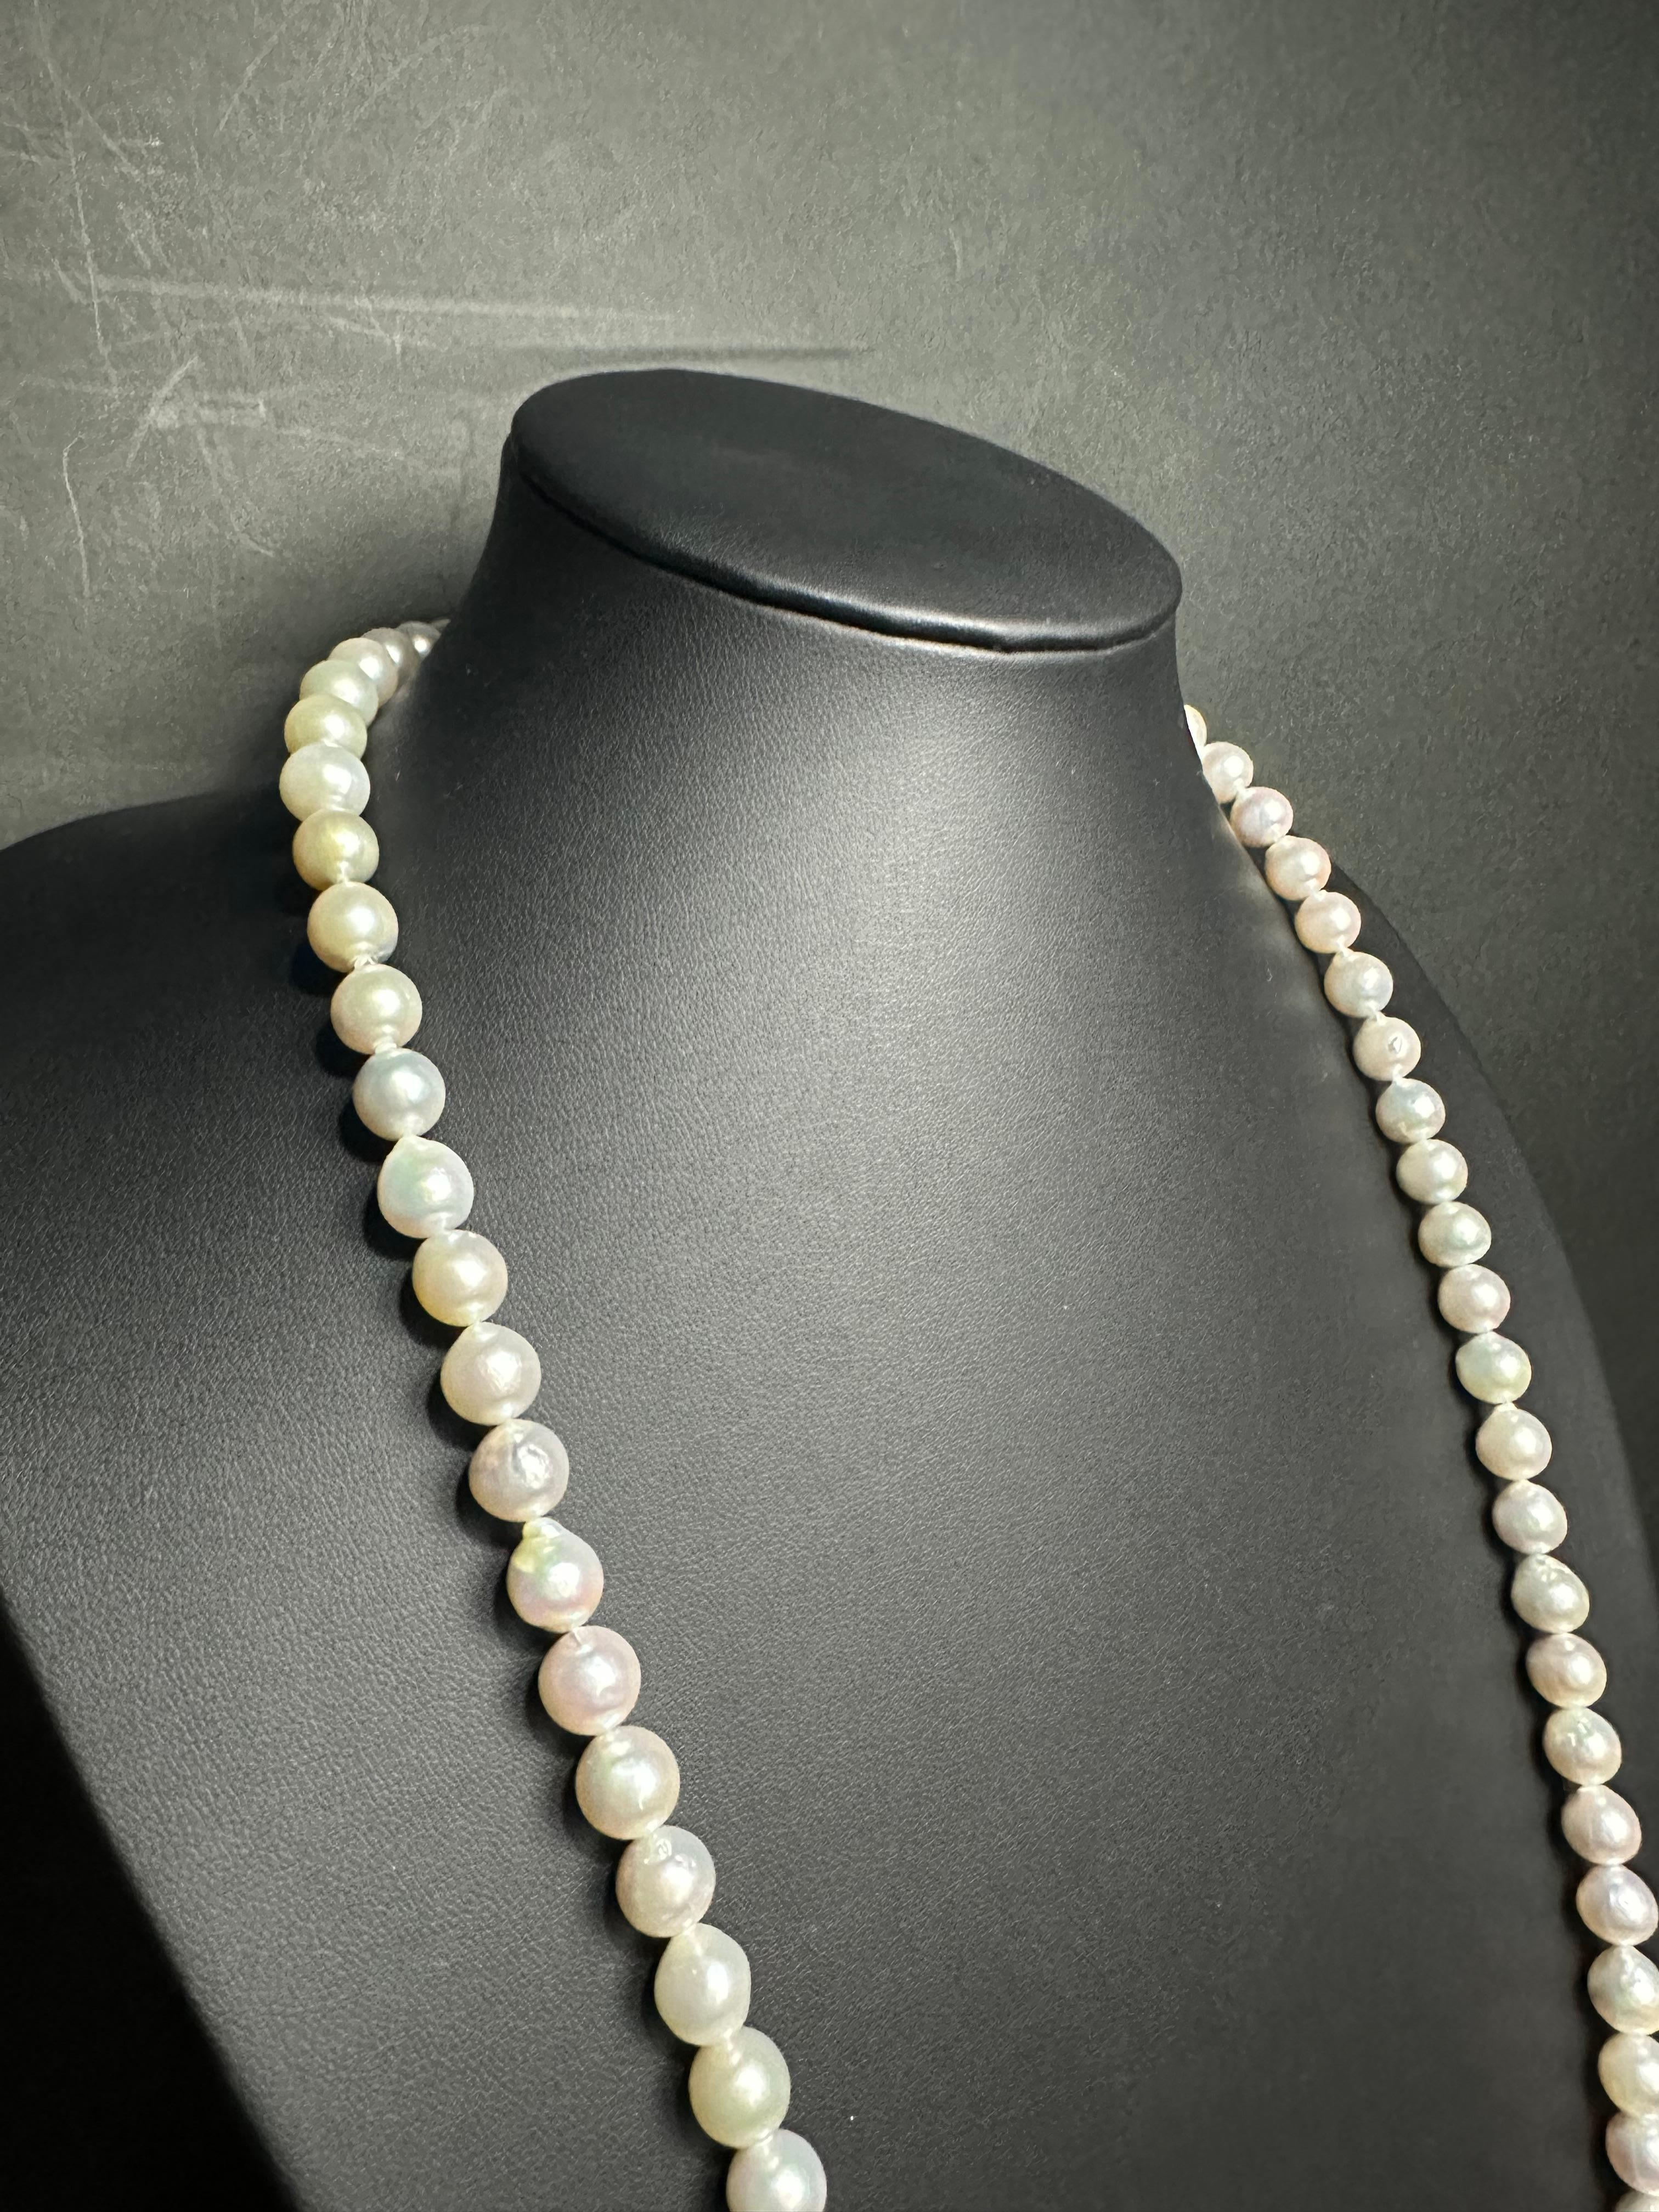 Créateur : IRIS PARURE
Ferme perlière : Ehime, Uwajima, JAPON
Caractéristiques : non coloré et non blanchi, BENI AKOYA®.
Taille de la perle : 9.00mm-9.50mm
Nombre de perles : 82

 Depuis sa création en 1953, IRIS PARURE fabrique des bijoux en perles